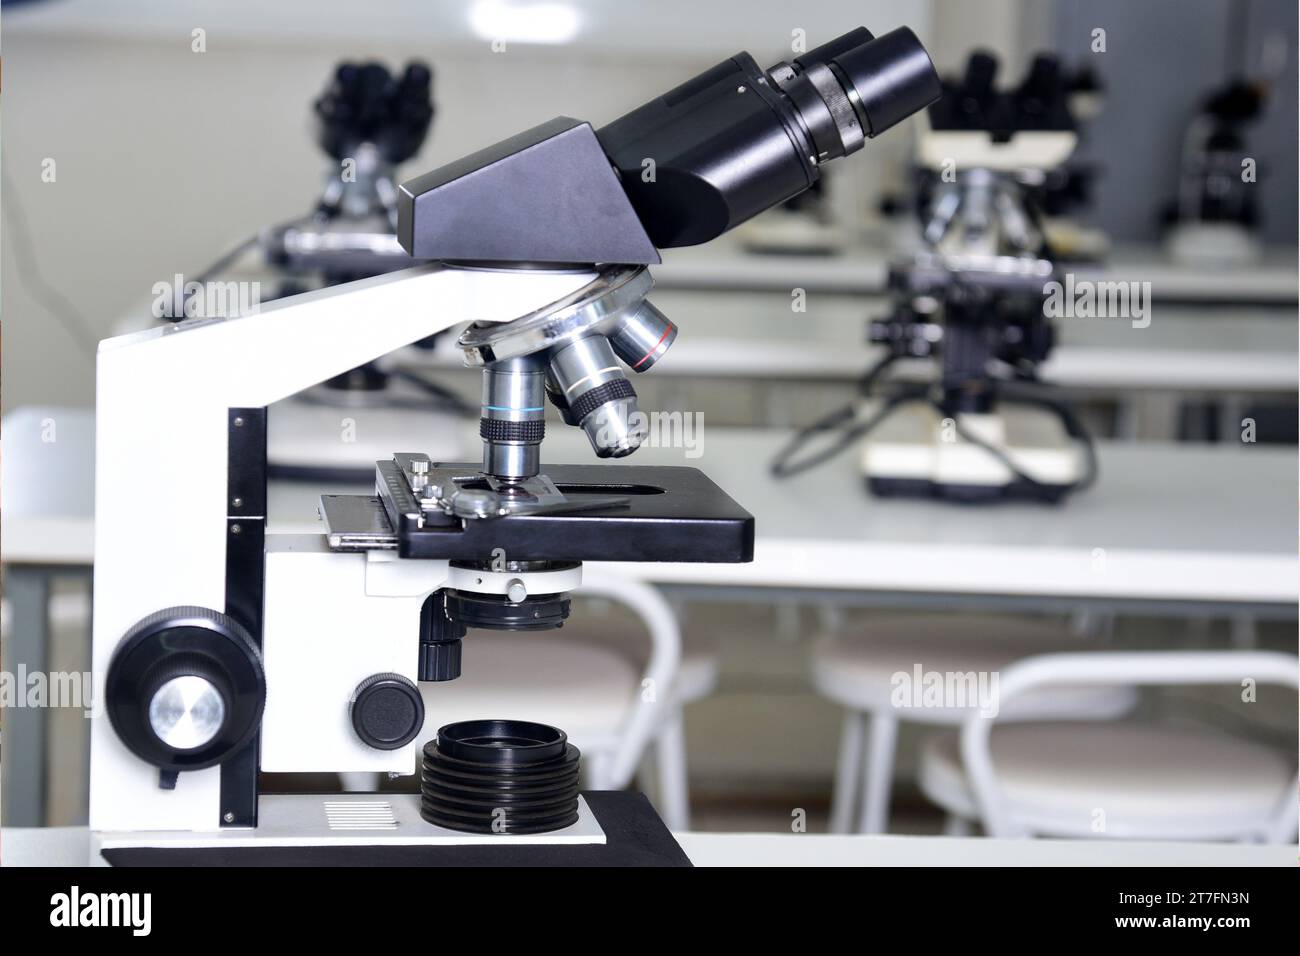 Strumento ottico per microscopio in grado di ingrandire immagini di oggetti molto piccoli grazie al suo potere di risoluzione microscopio elettronico ricerca salute Foto Stock